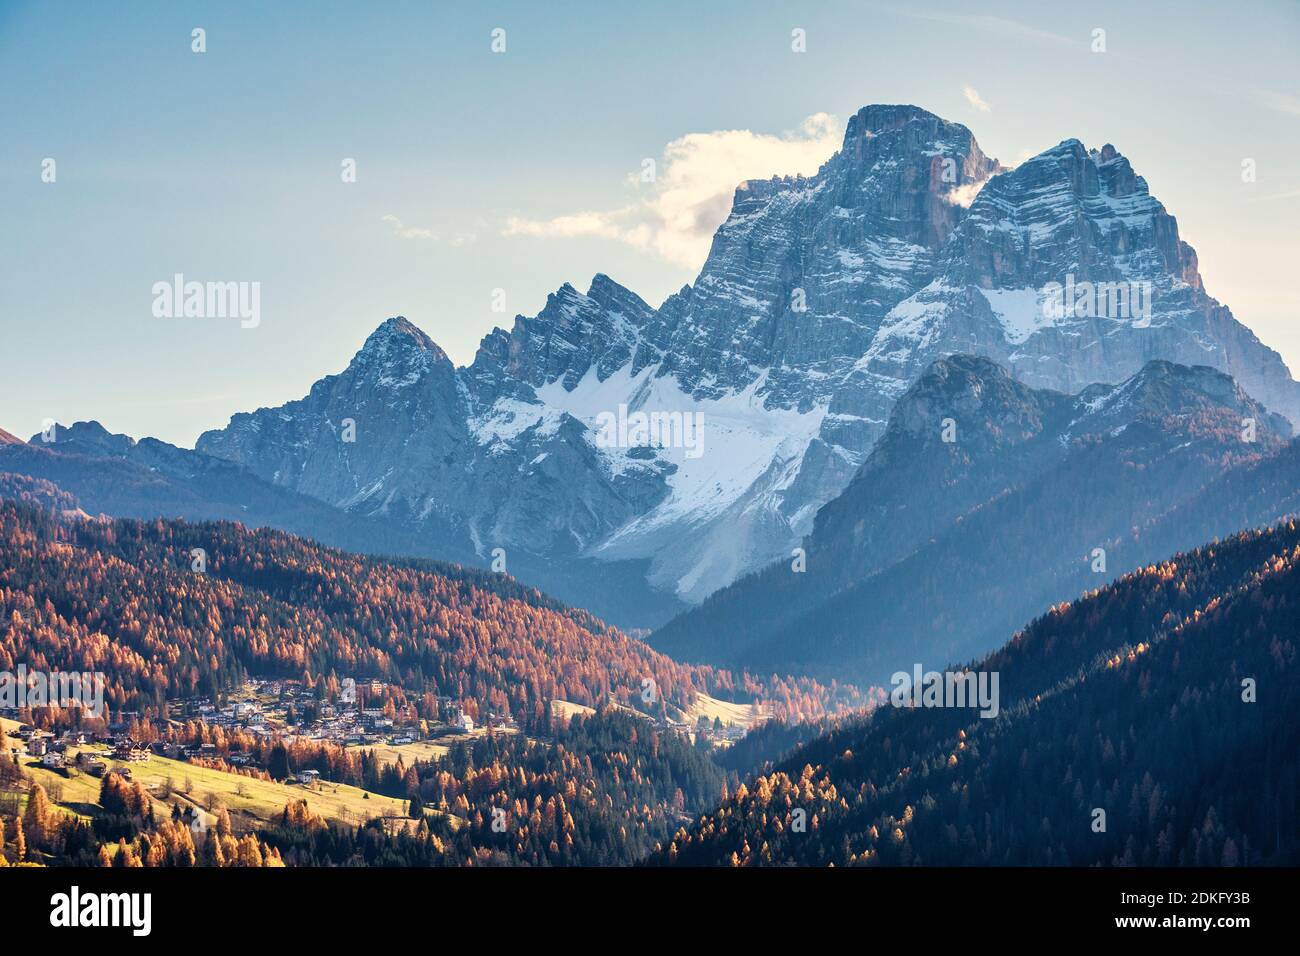 mountain Pelmo and some houses of Santa Fosca village, Fiorentina valley, Dolomites, Belluno, Veneto, Italy Stock Photo